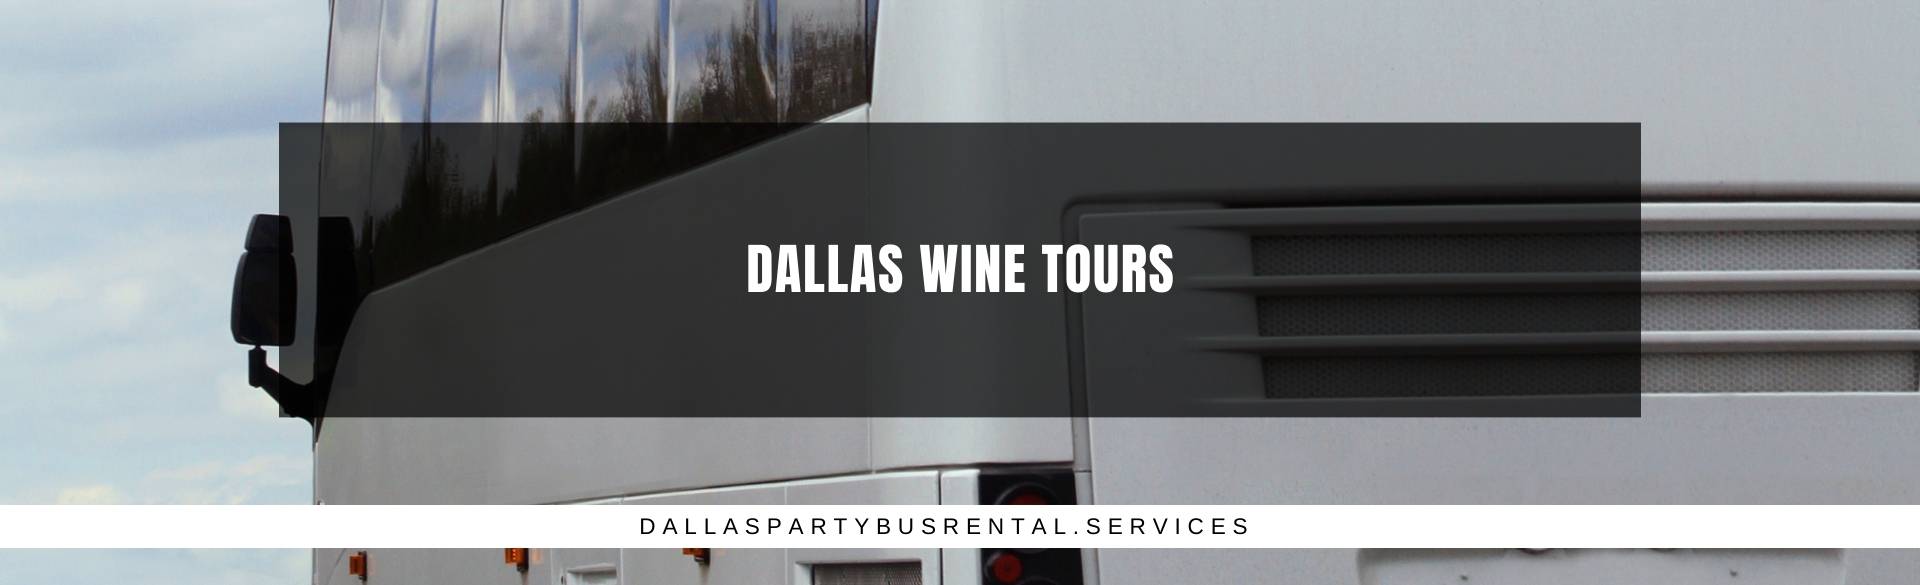 Dallas Wine Tours